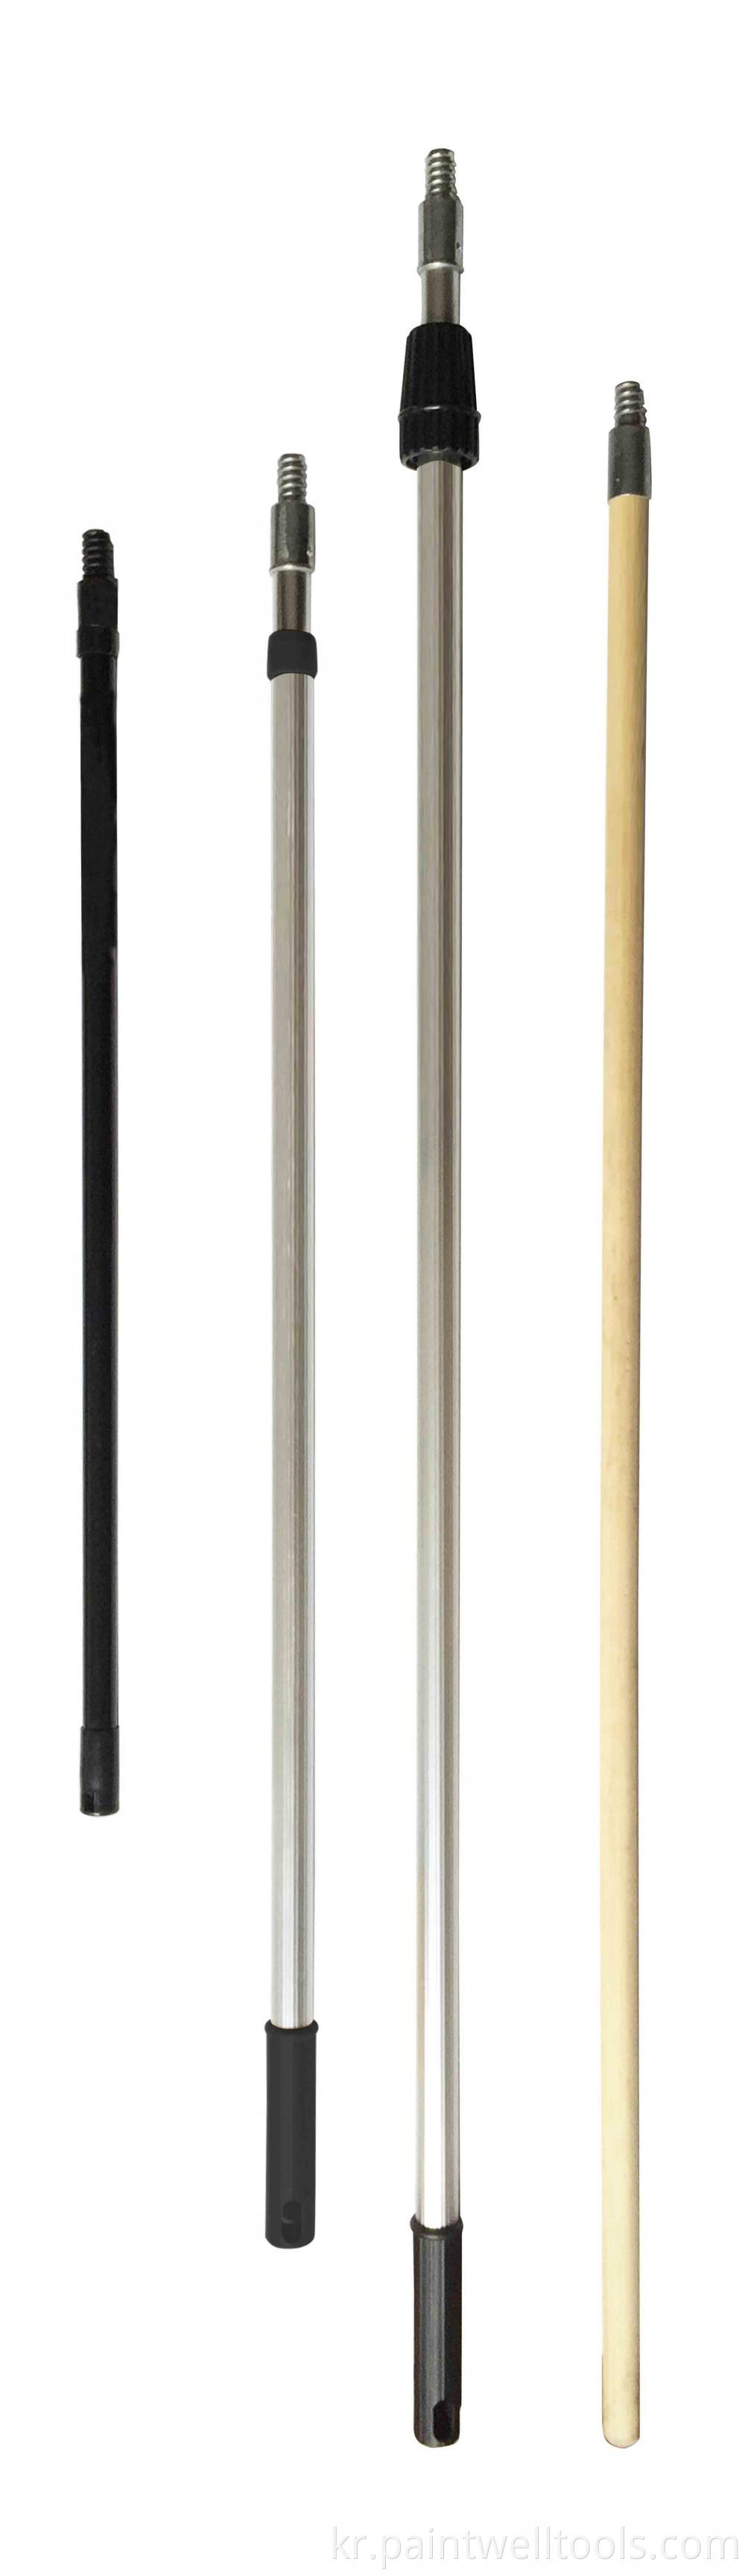 Extension Poles 2